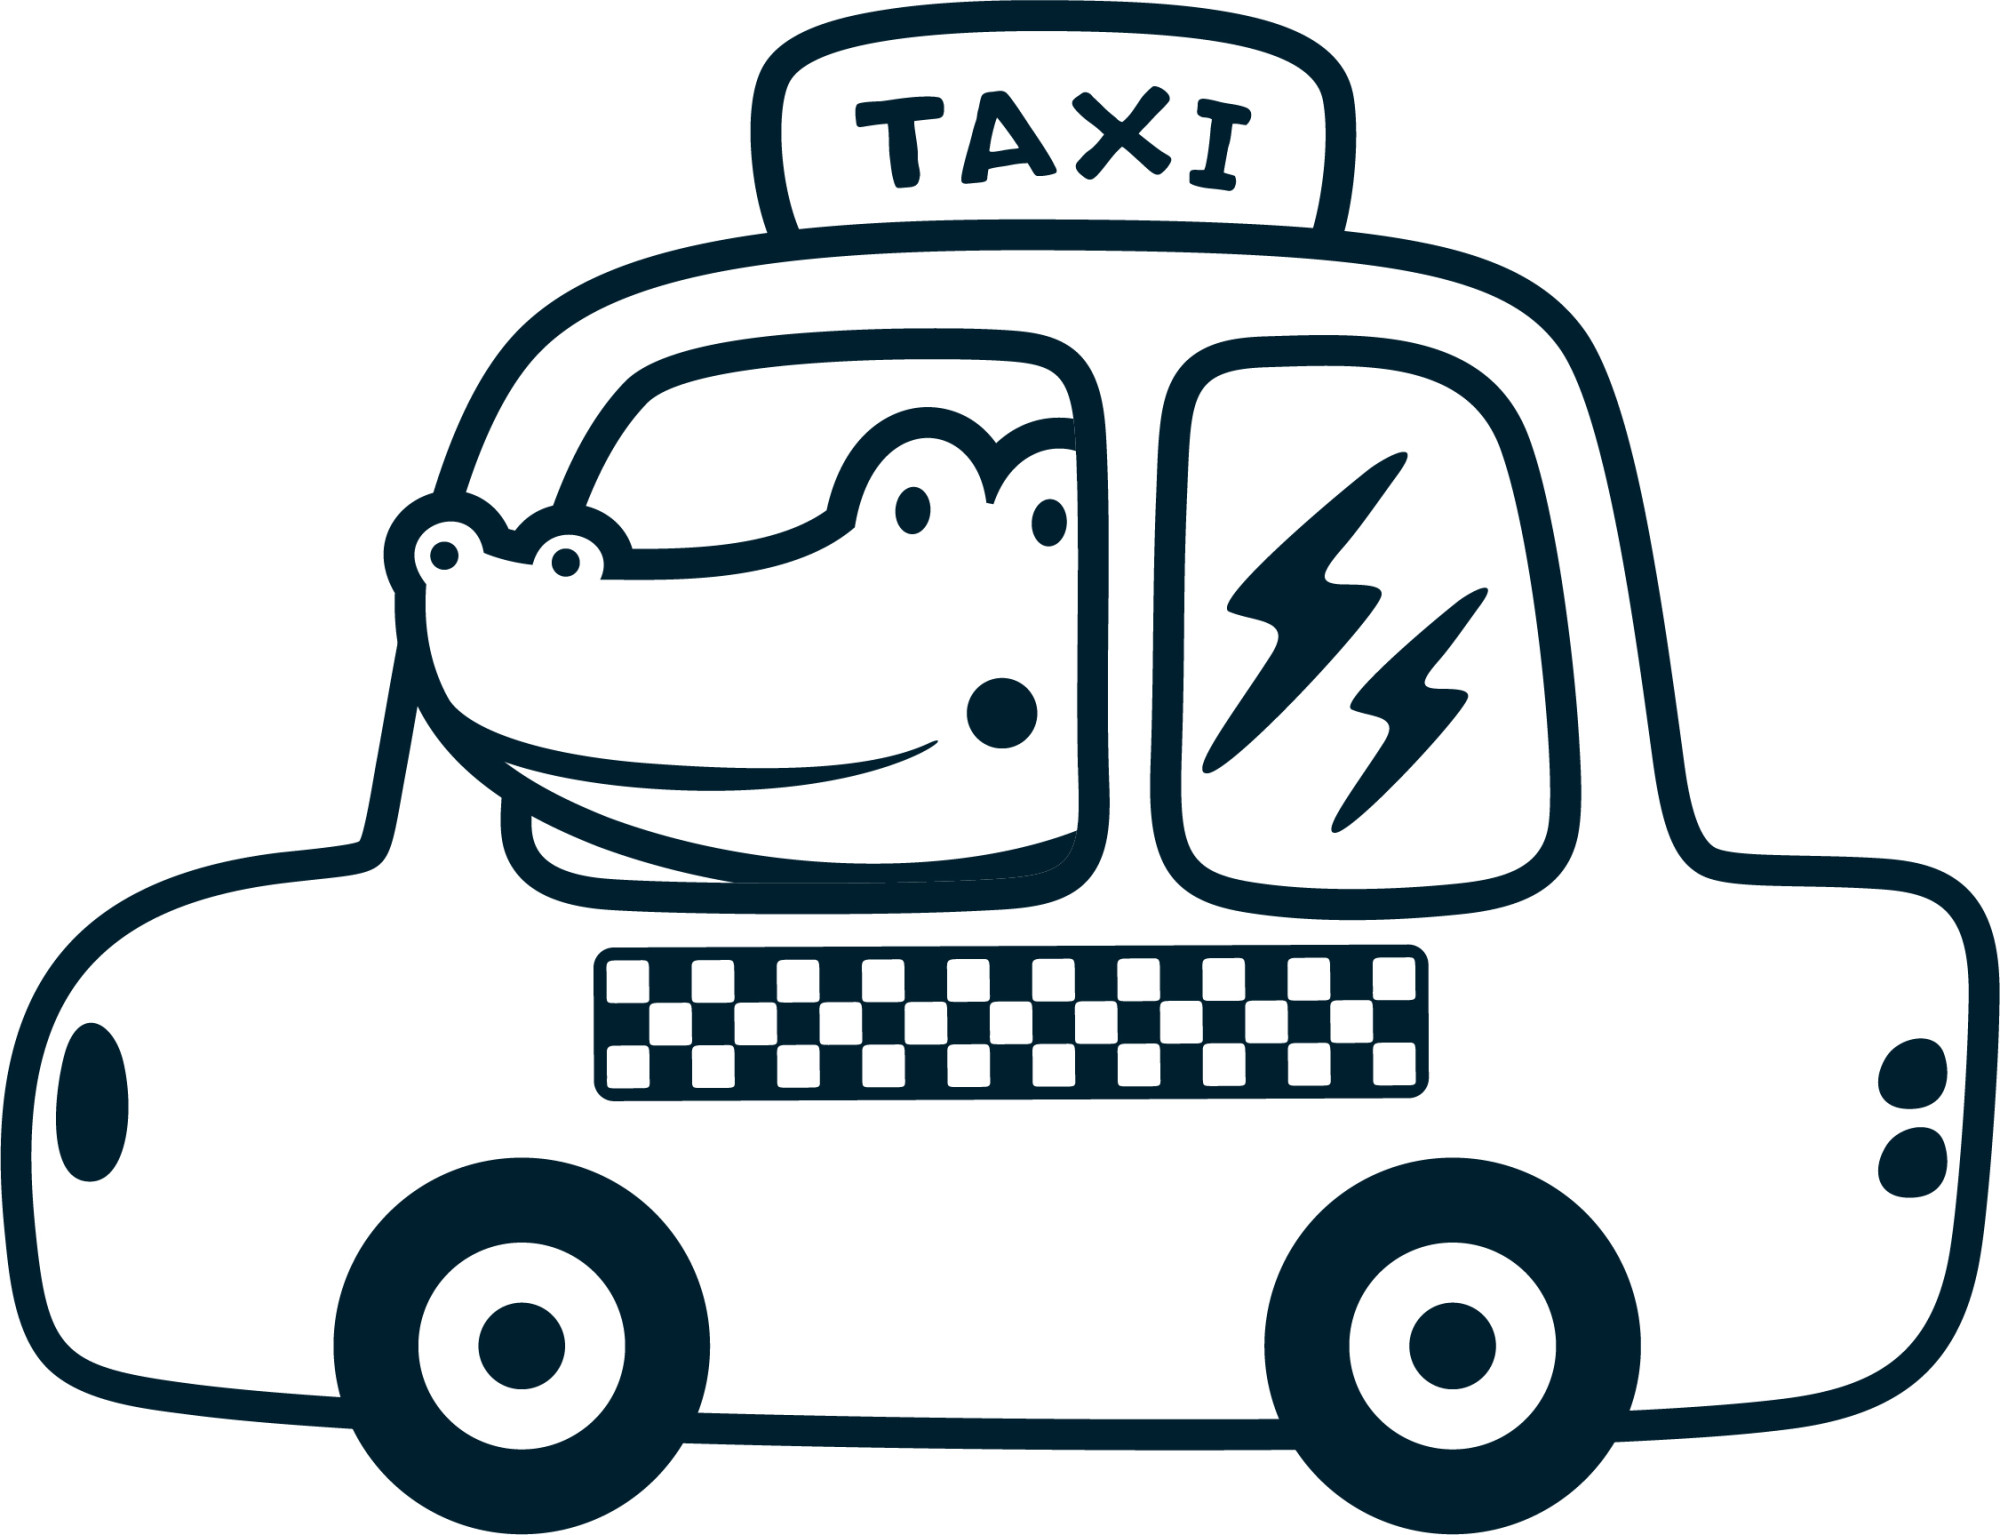 Раскраска для детей: крокодил едет на такси